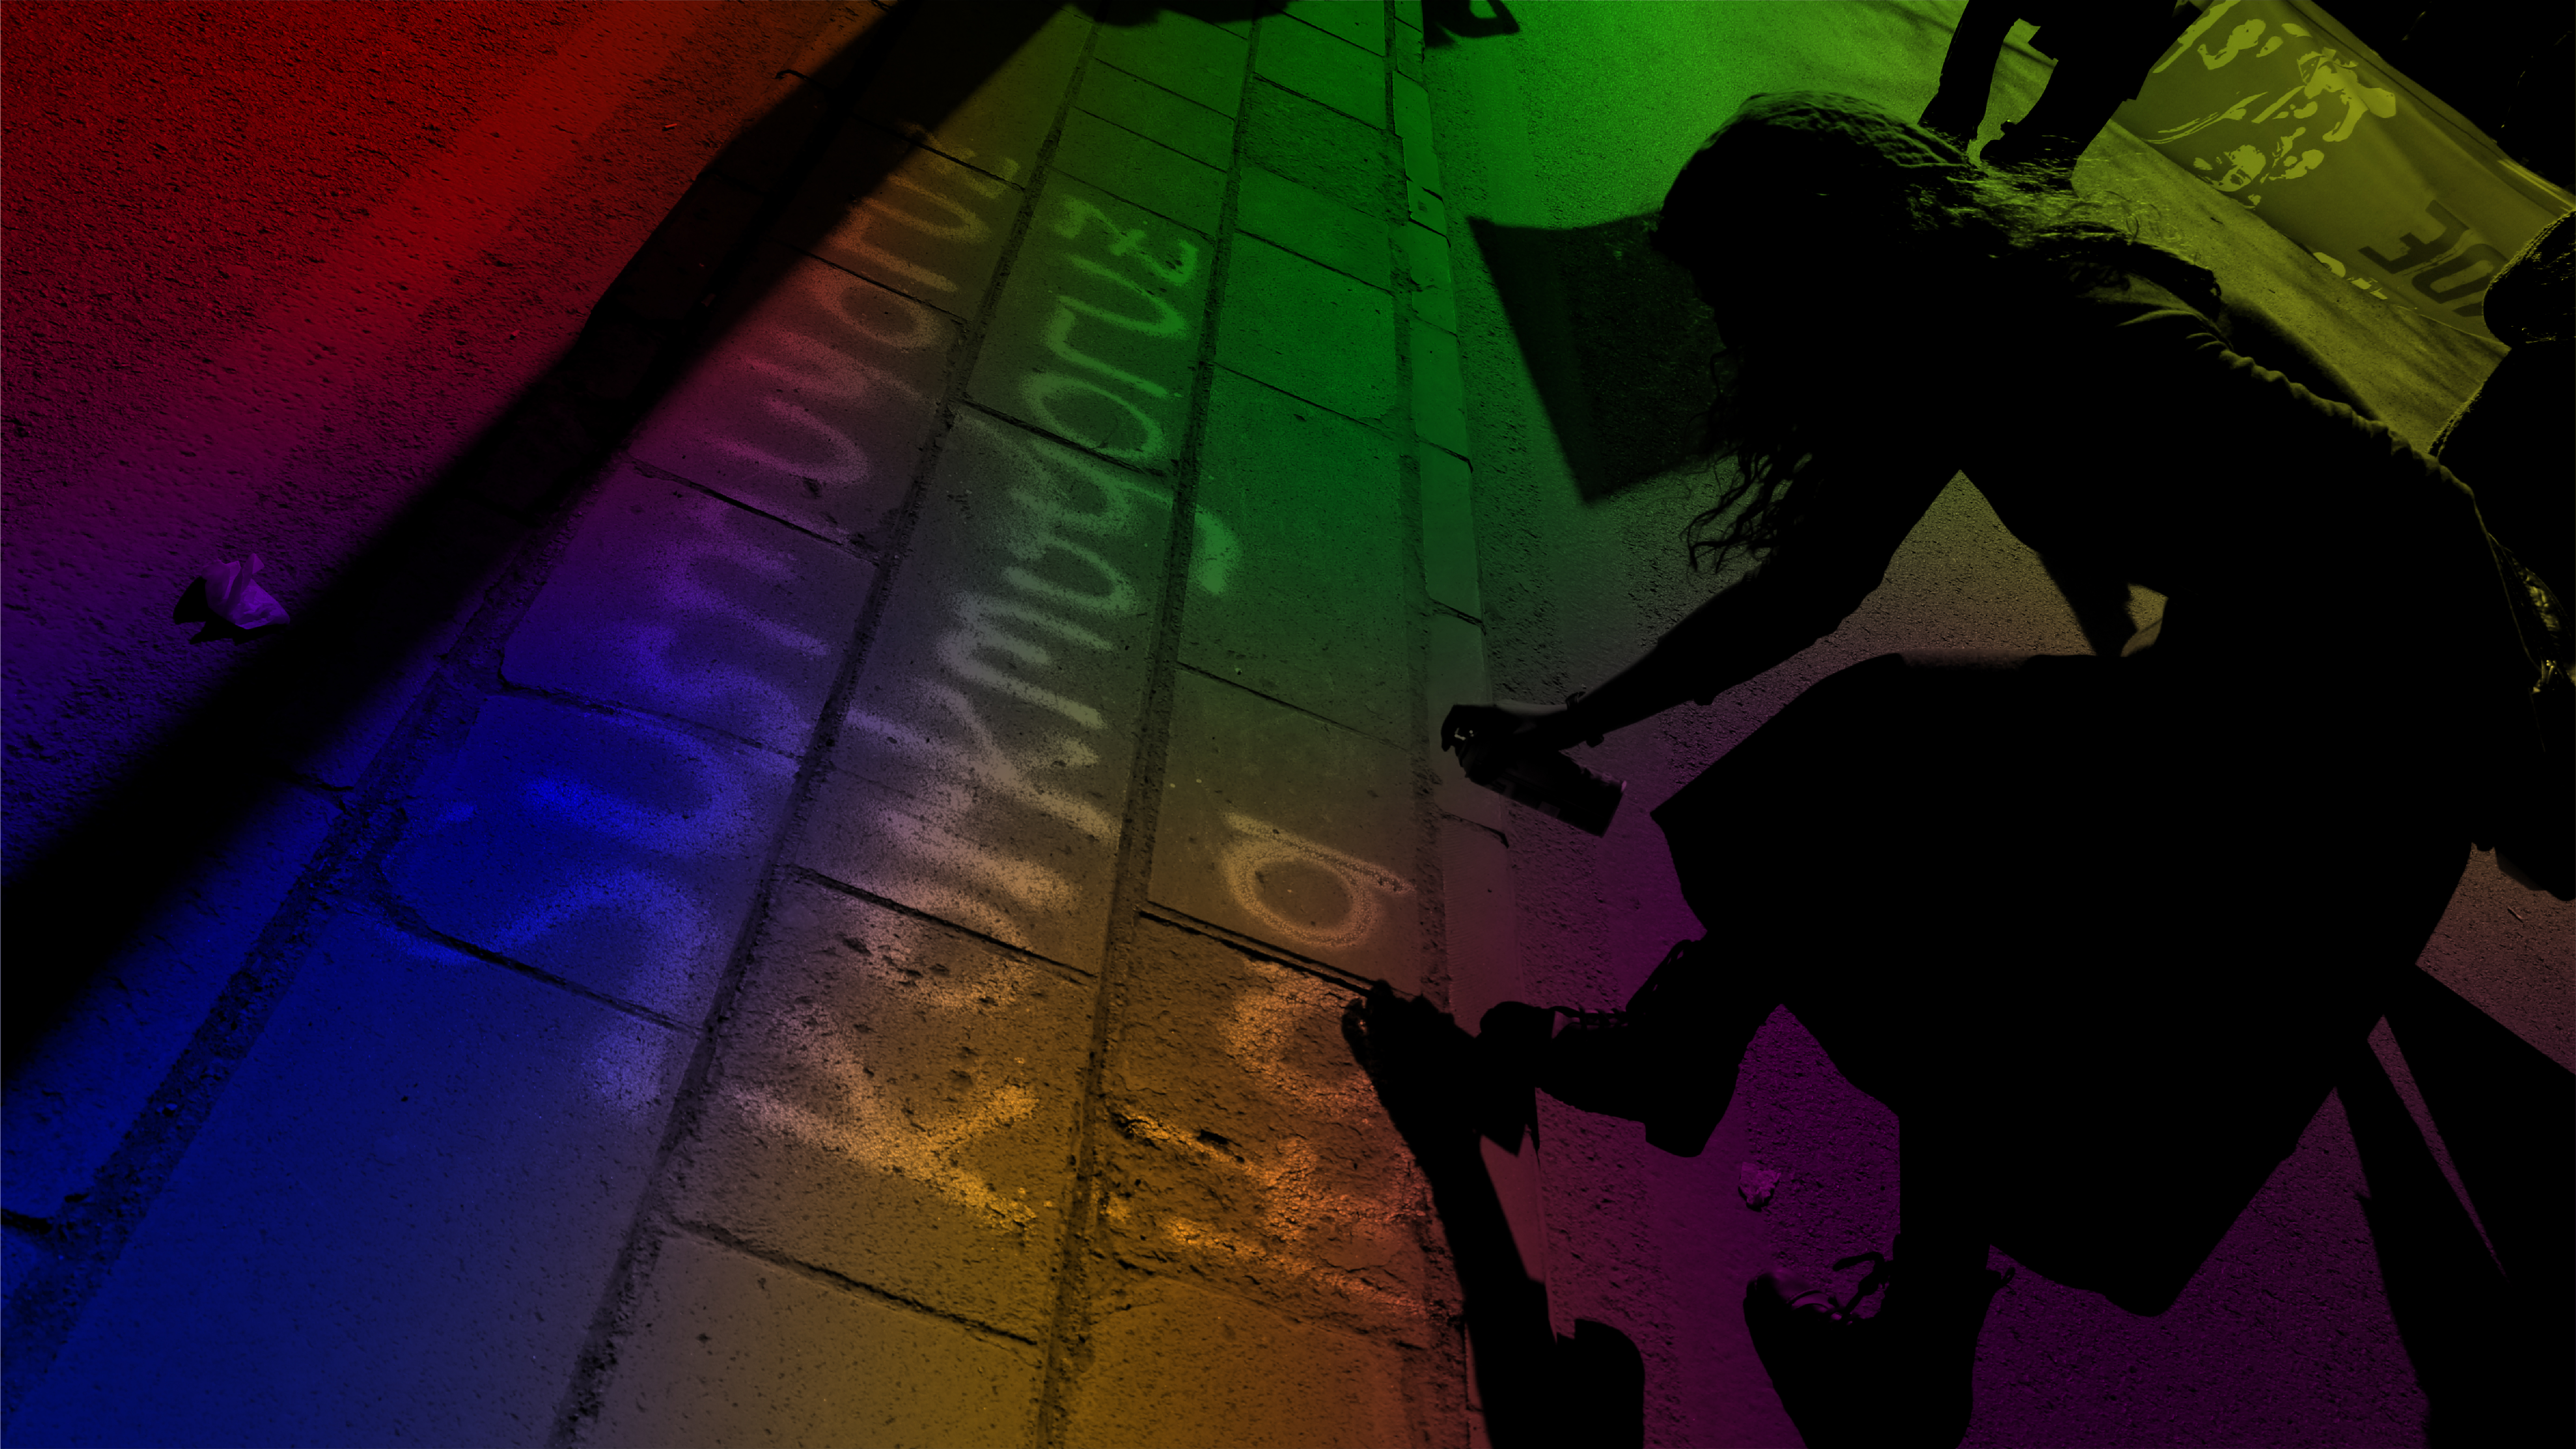 Ekim’de LGBTİ+’lara hak ihlalleri: Bir ayda, üç şehirde nefret mitingi | Kaos GL - LGBTİ+ Haber Portalı Haber